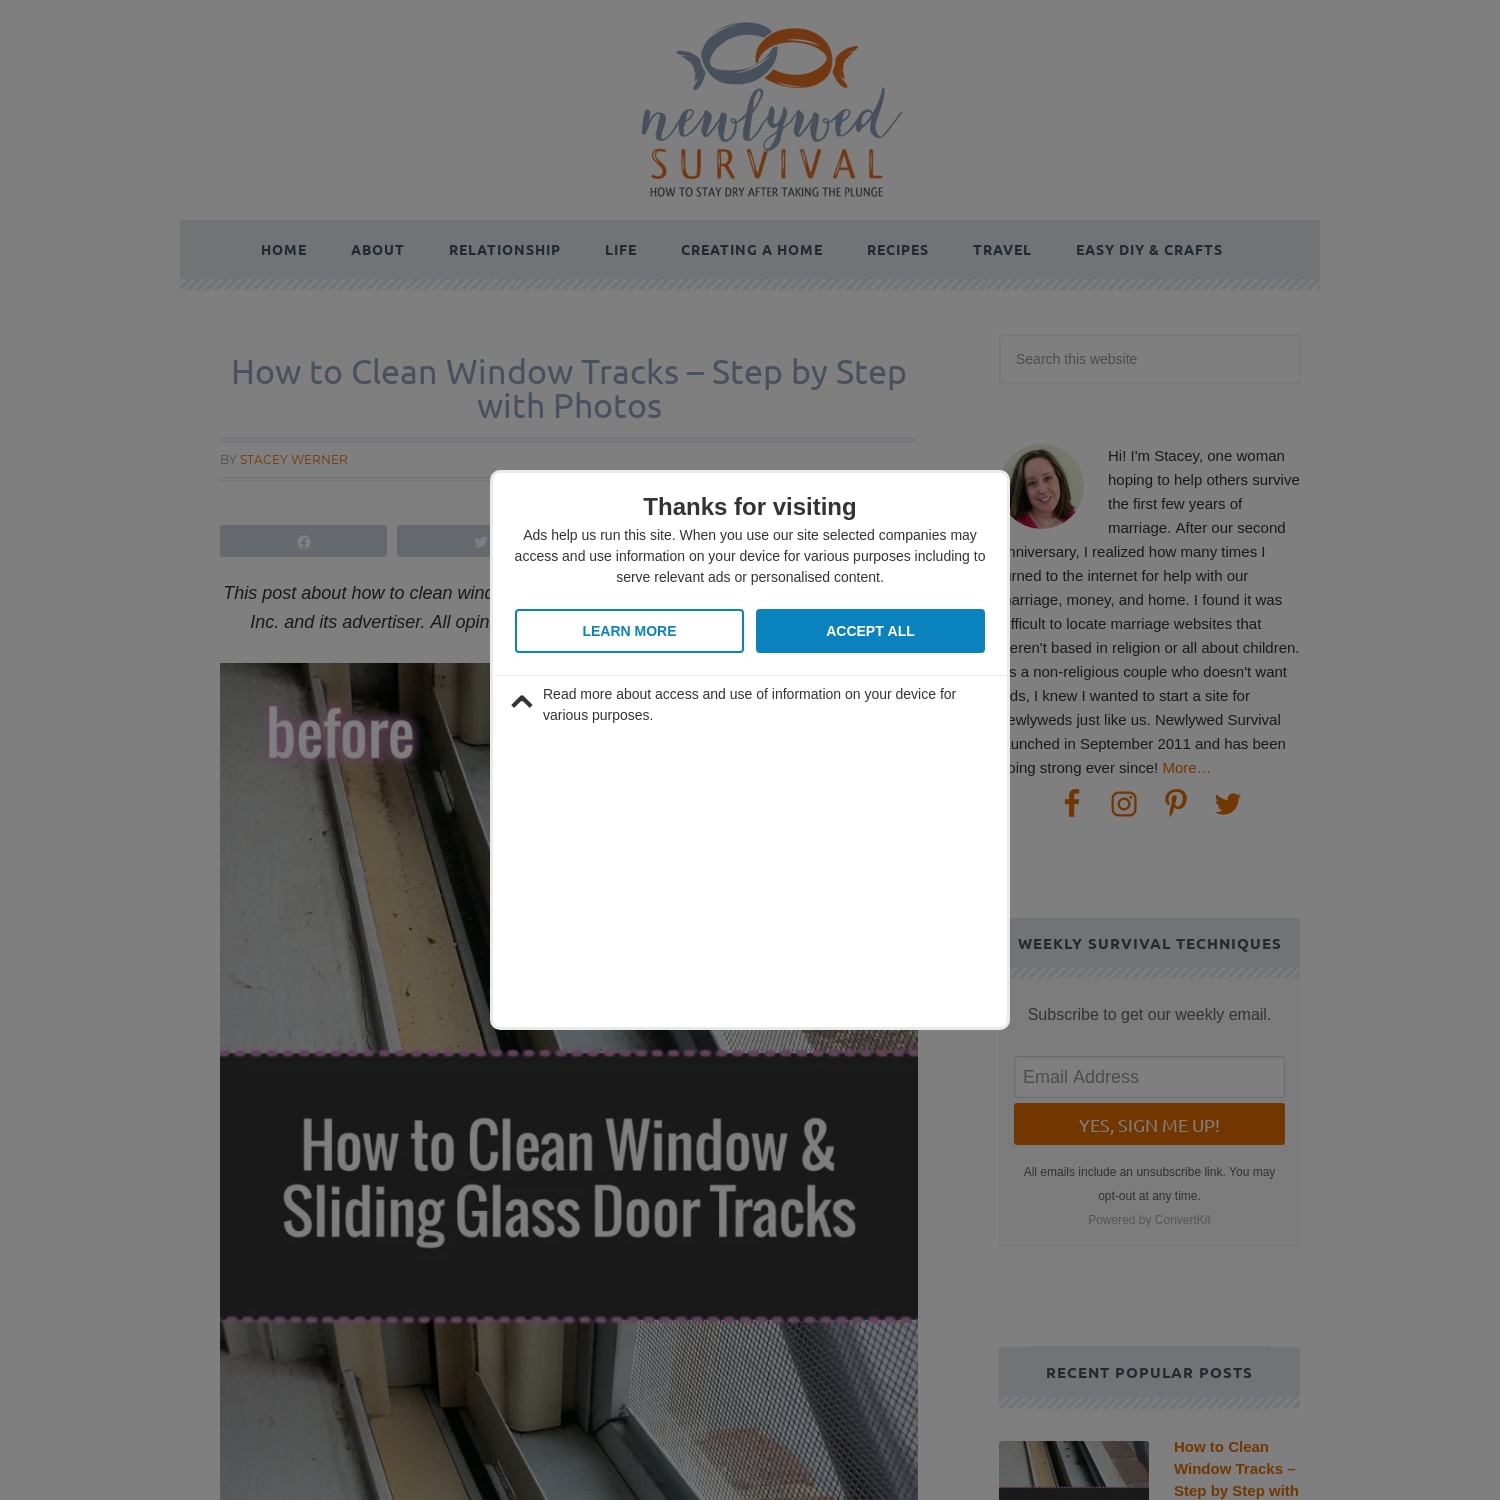 How to Clean Window & Sliding Glass Door Tracks